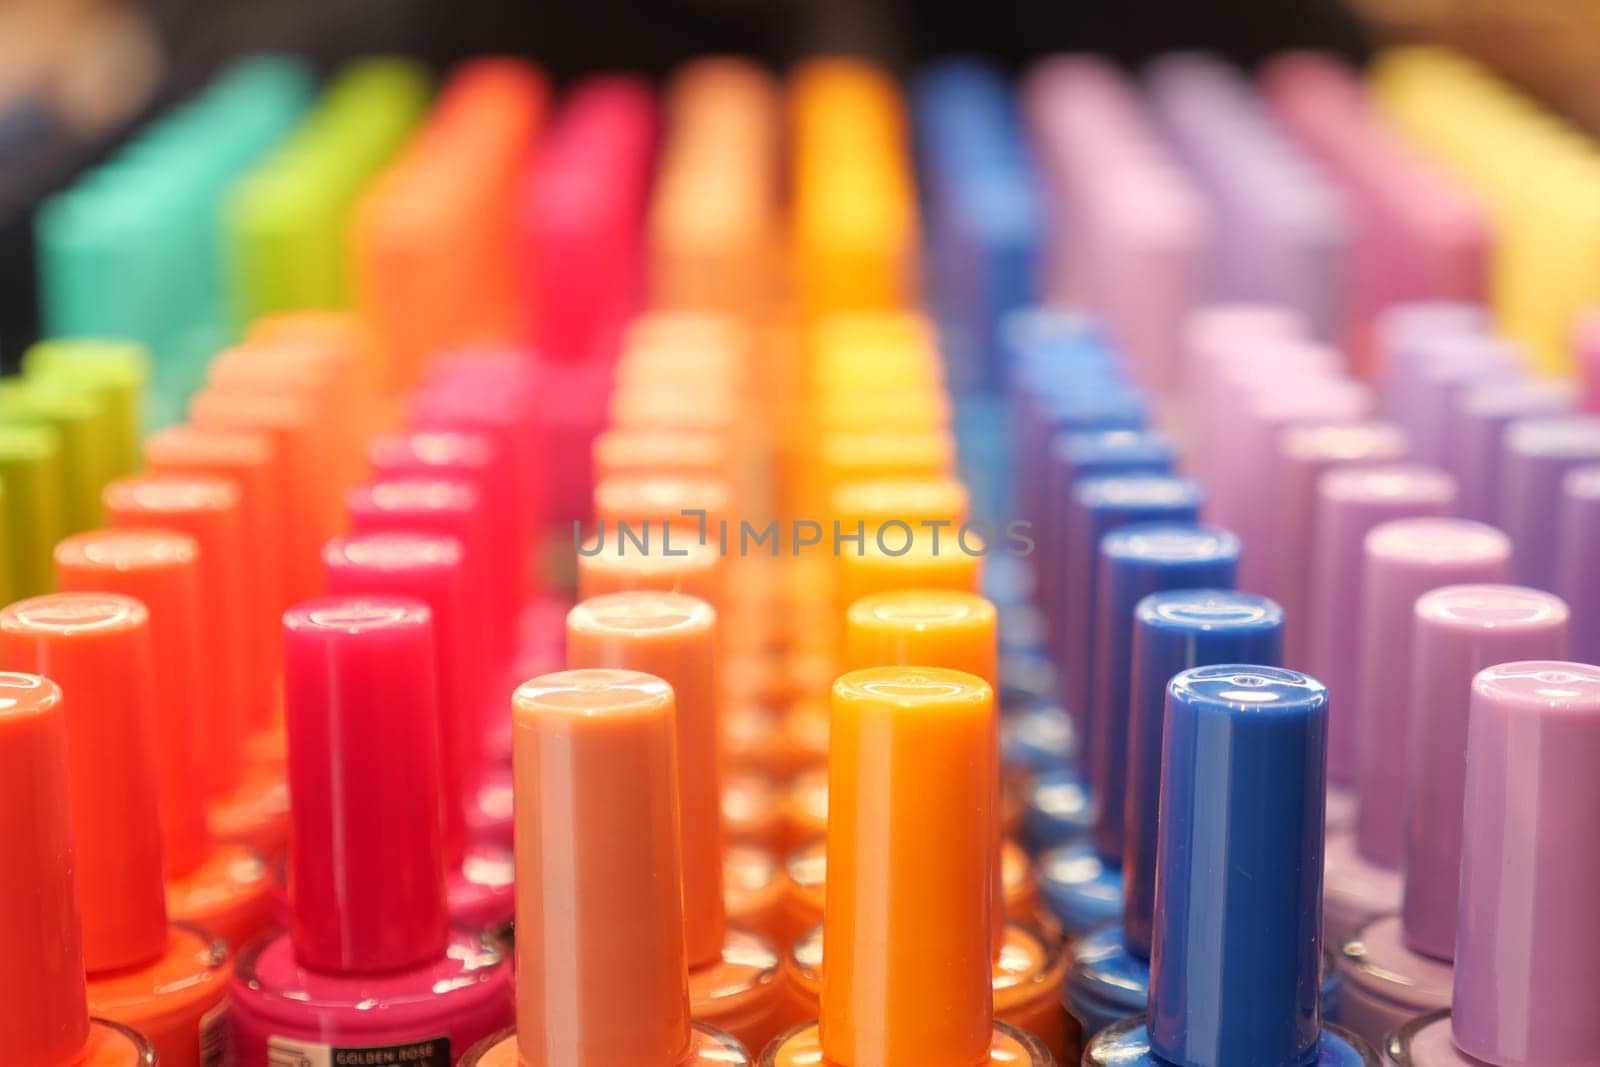 nail polish collection display at shop shelf , by towfiq007